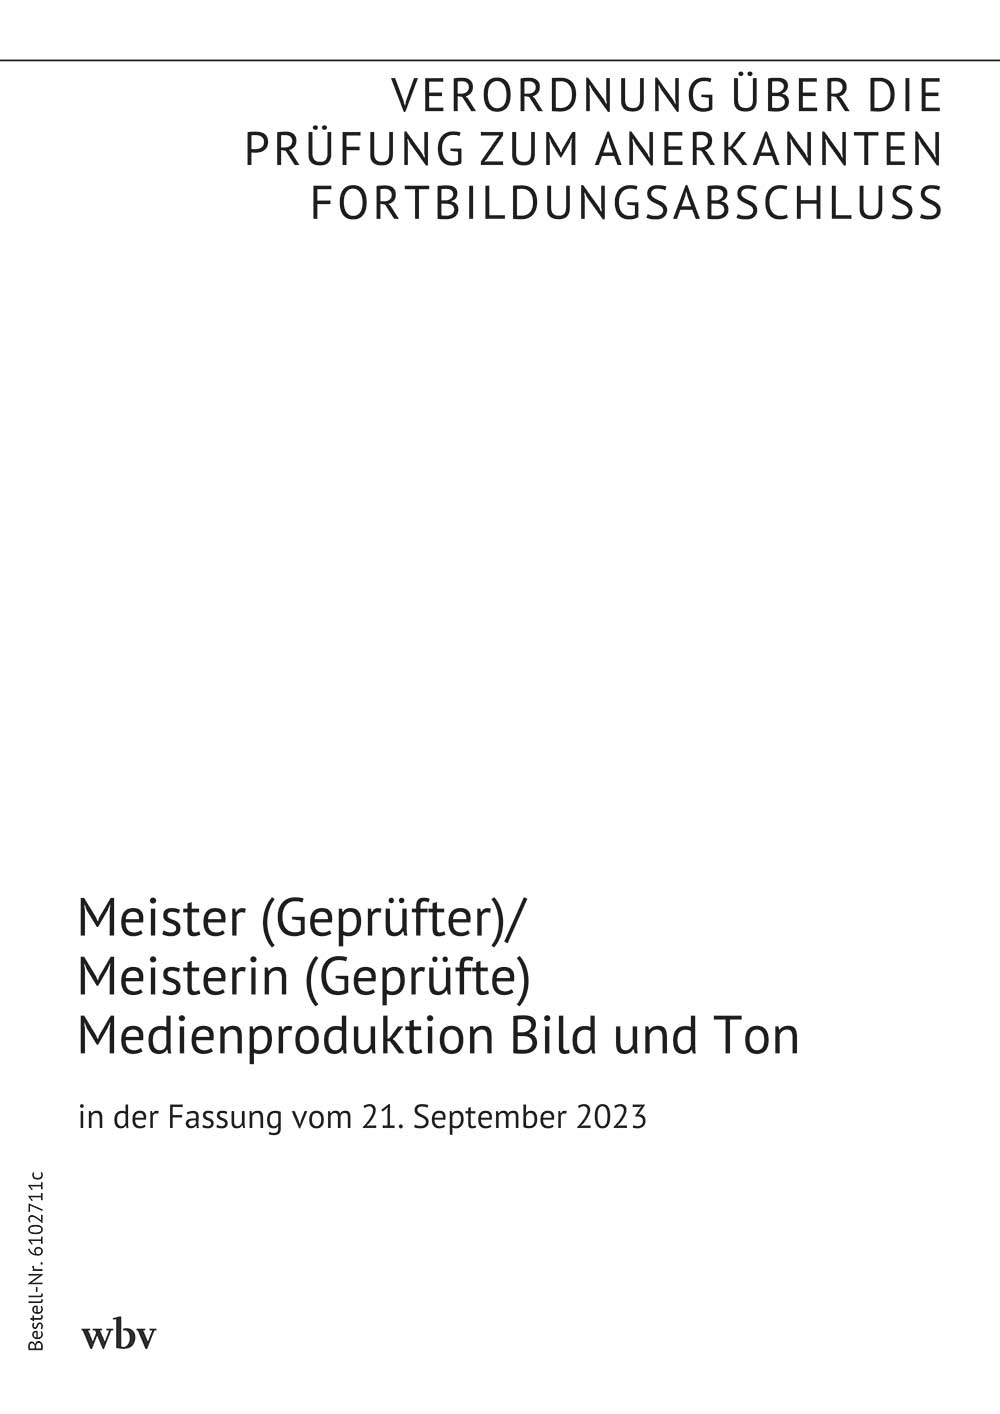 Meister (Geprüfter)/Meisterin (Geprüfte) Medienproduktion Bild und Ton